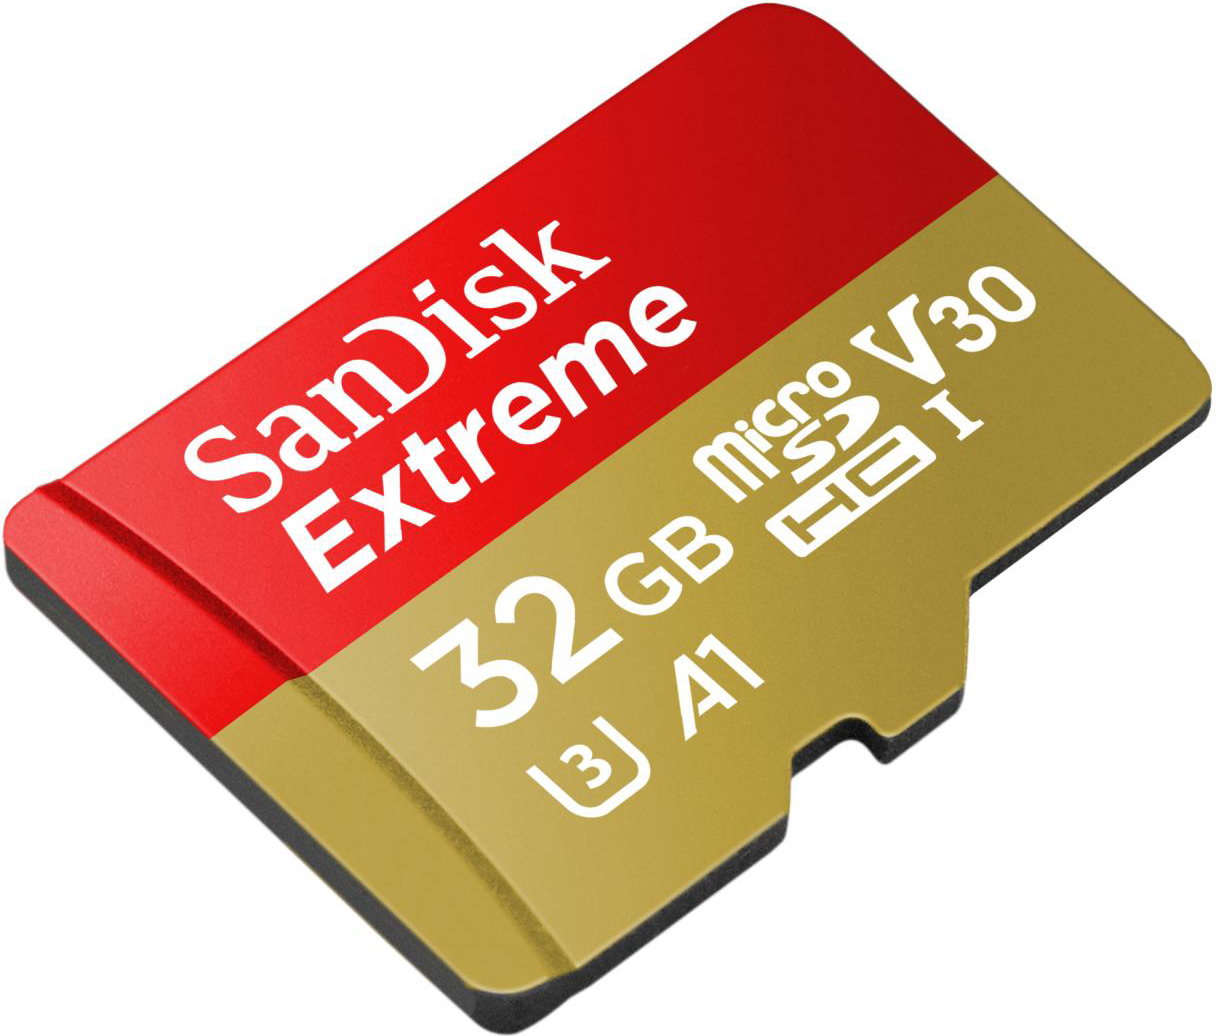 Sandisk SDSQXAF-032G-GN6AA Scheda di Memoria MicroSDHC 32 Gb Video Class V30